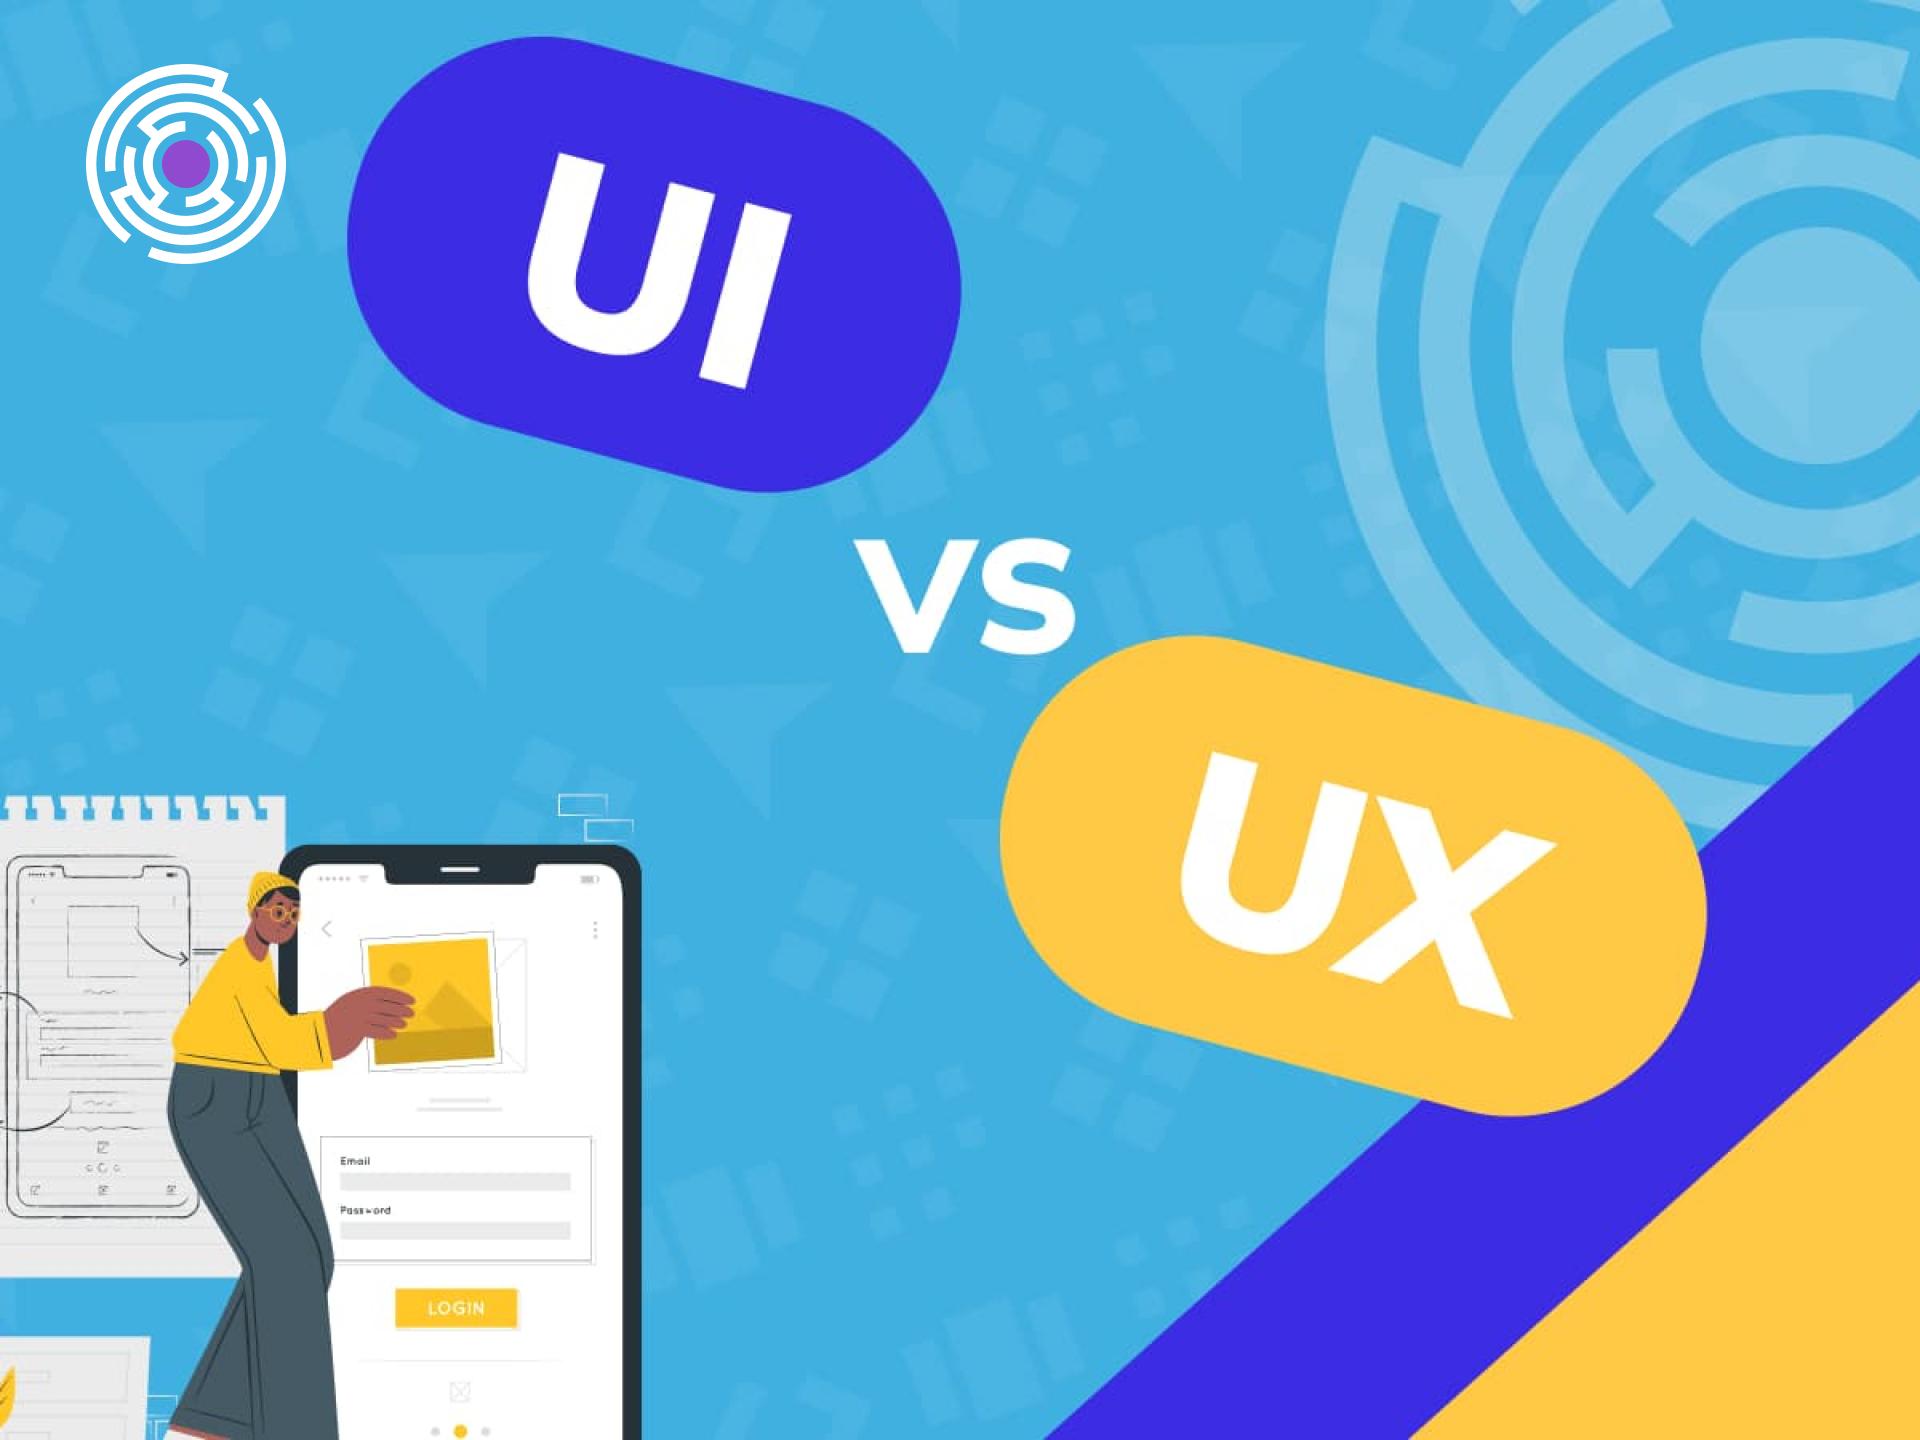 Cốt lõi sự khác biệt giữa UI UX?